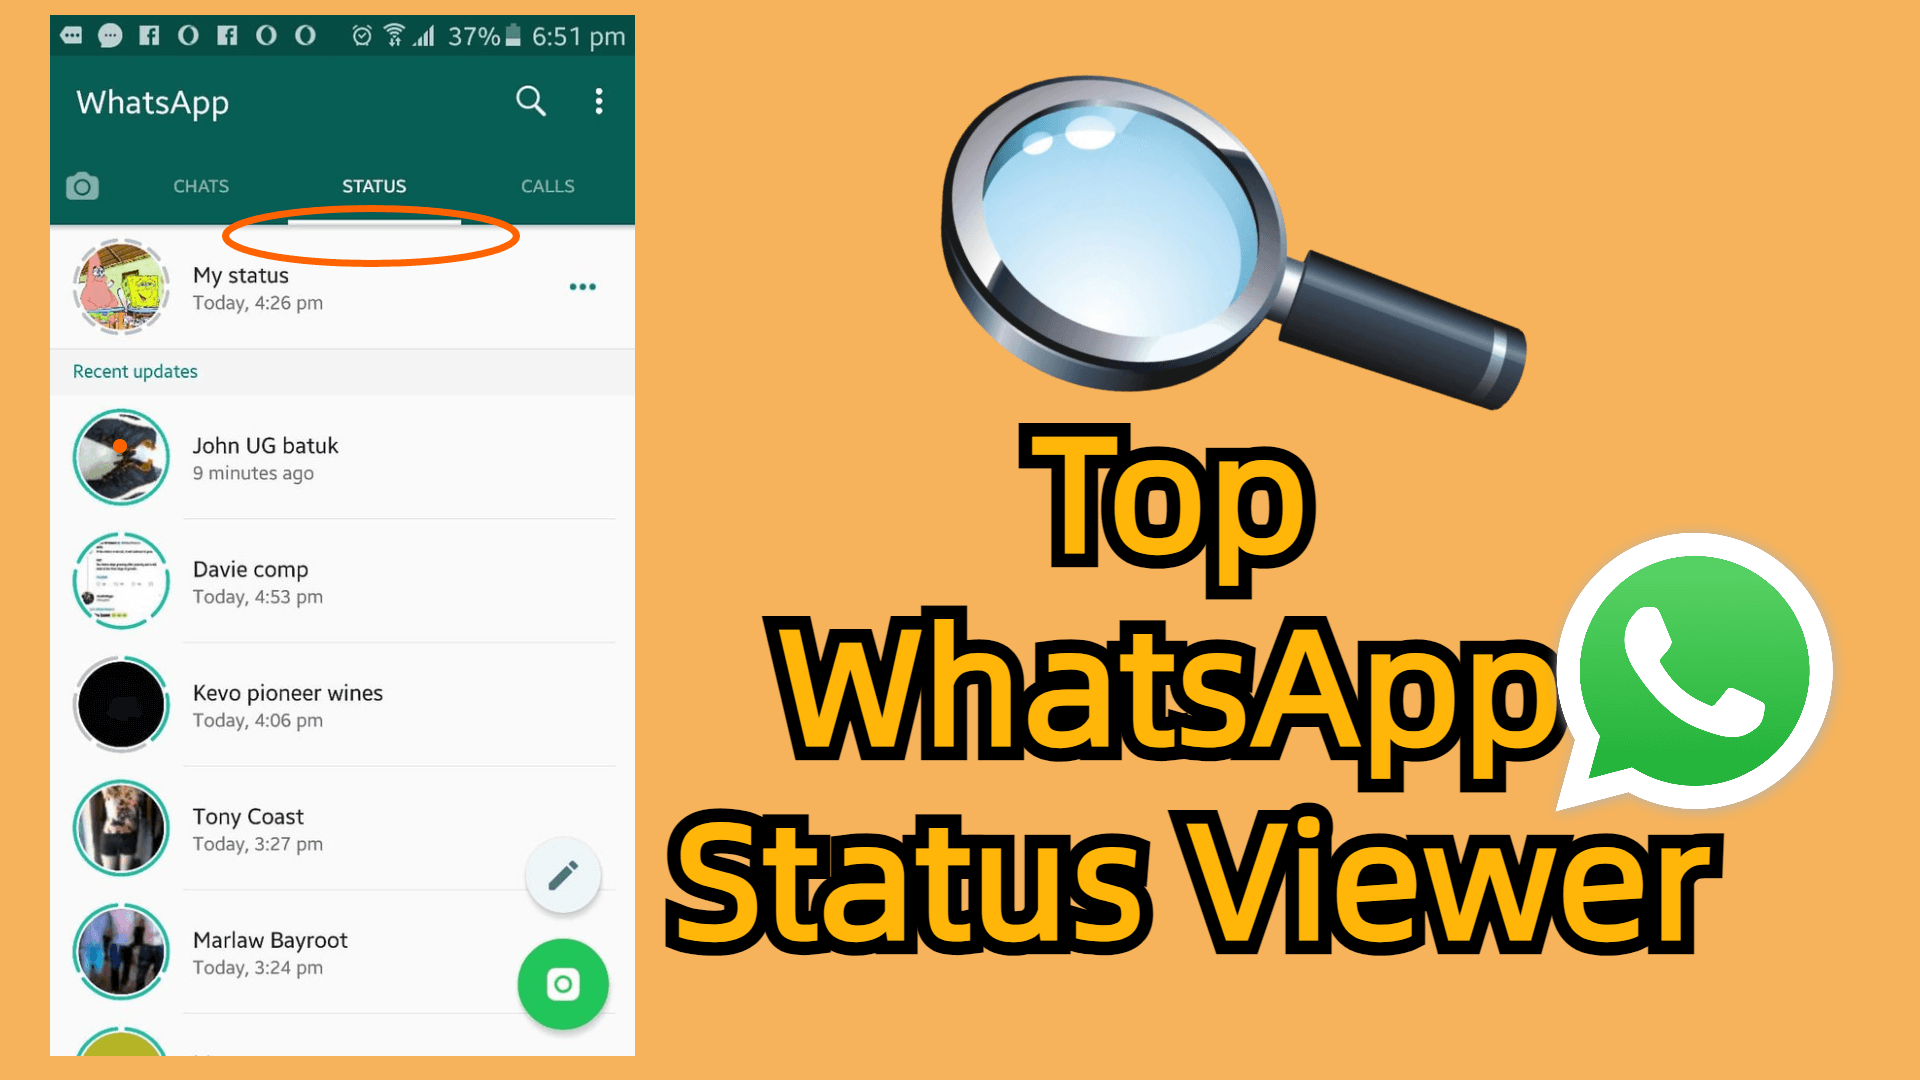 WhatsApp status viewers